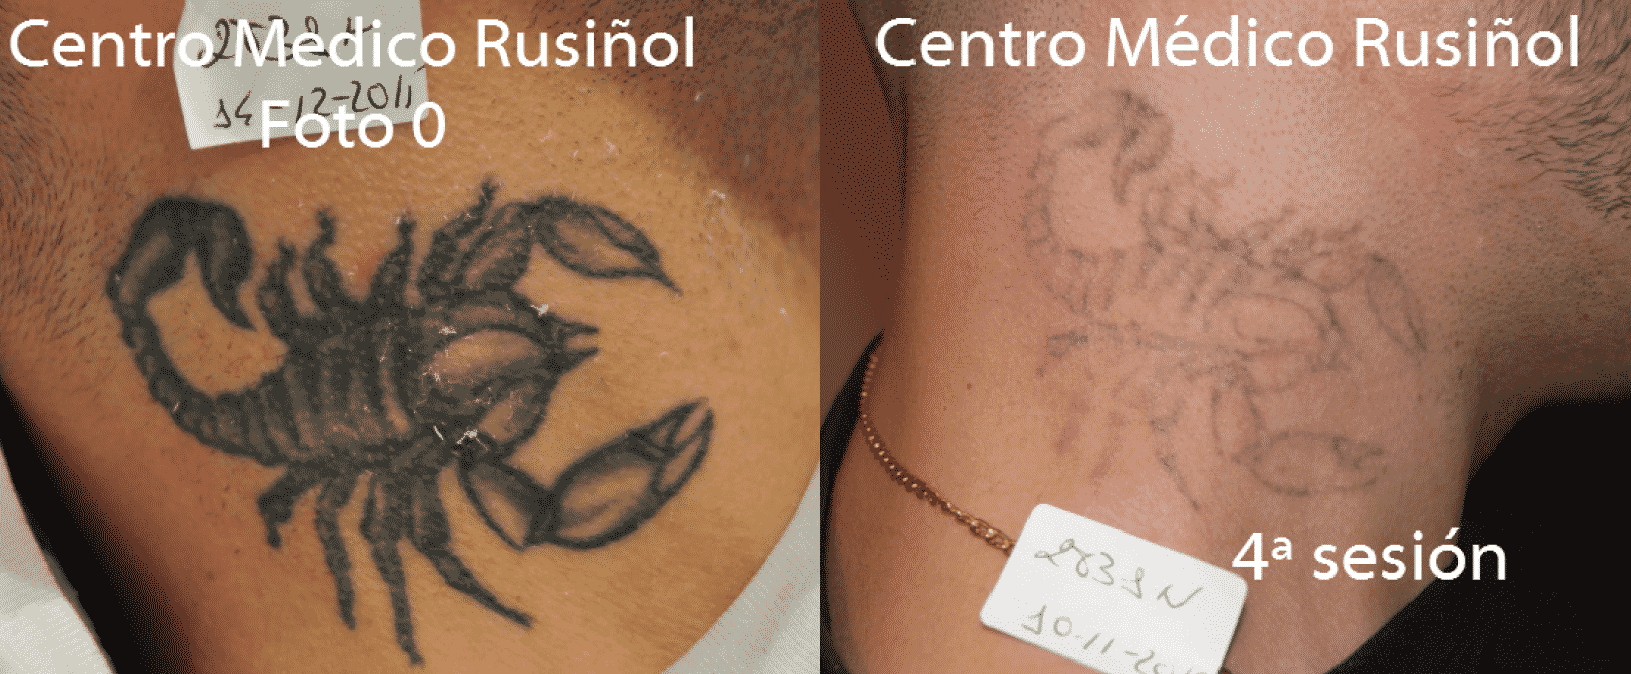 Eliminación láser de 4 tatuajes. Resultado de 4 sesiones